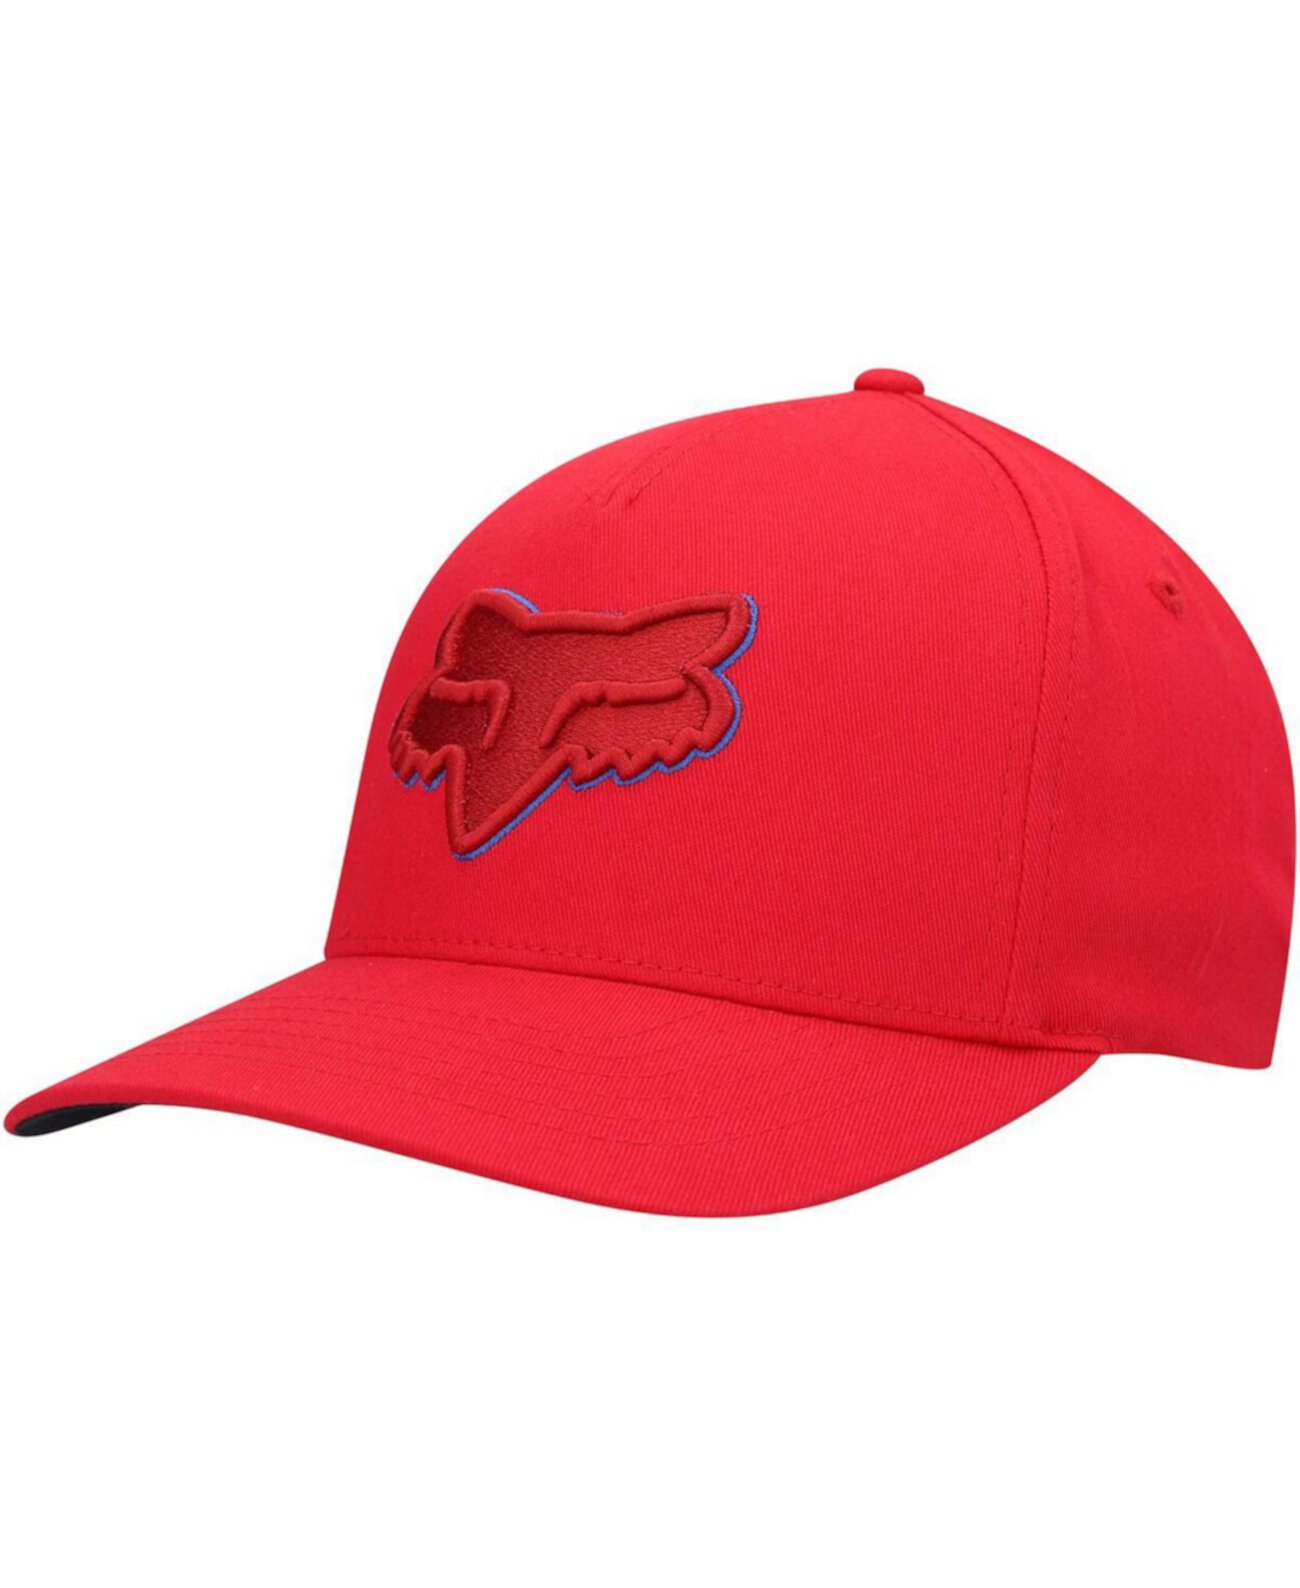 Fox цвет. Красная шляпа мужская. Fox Epicycle Flexfit 2.0 hat.